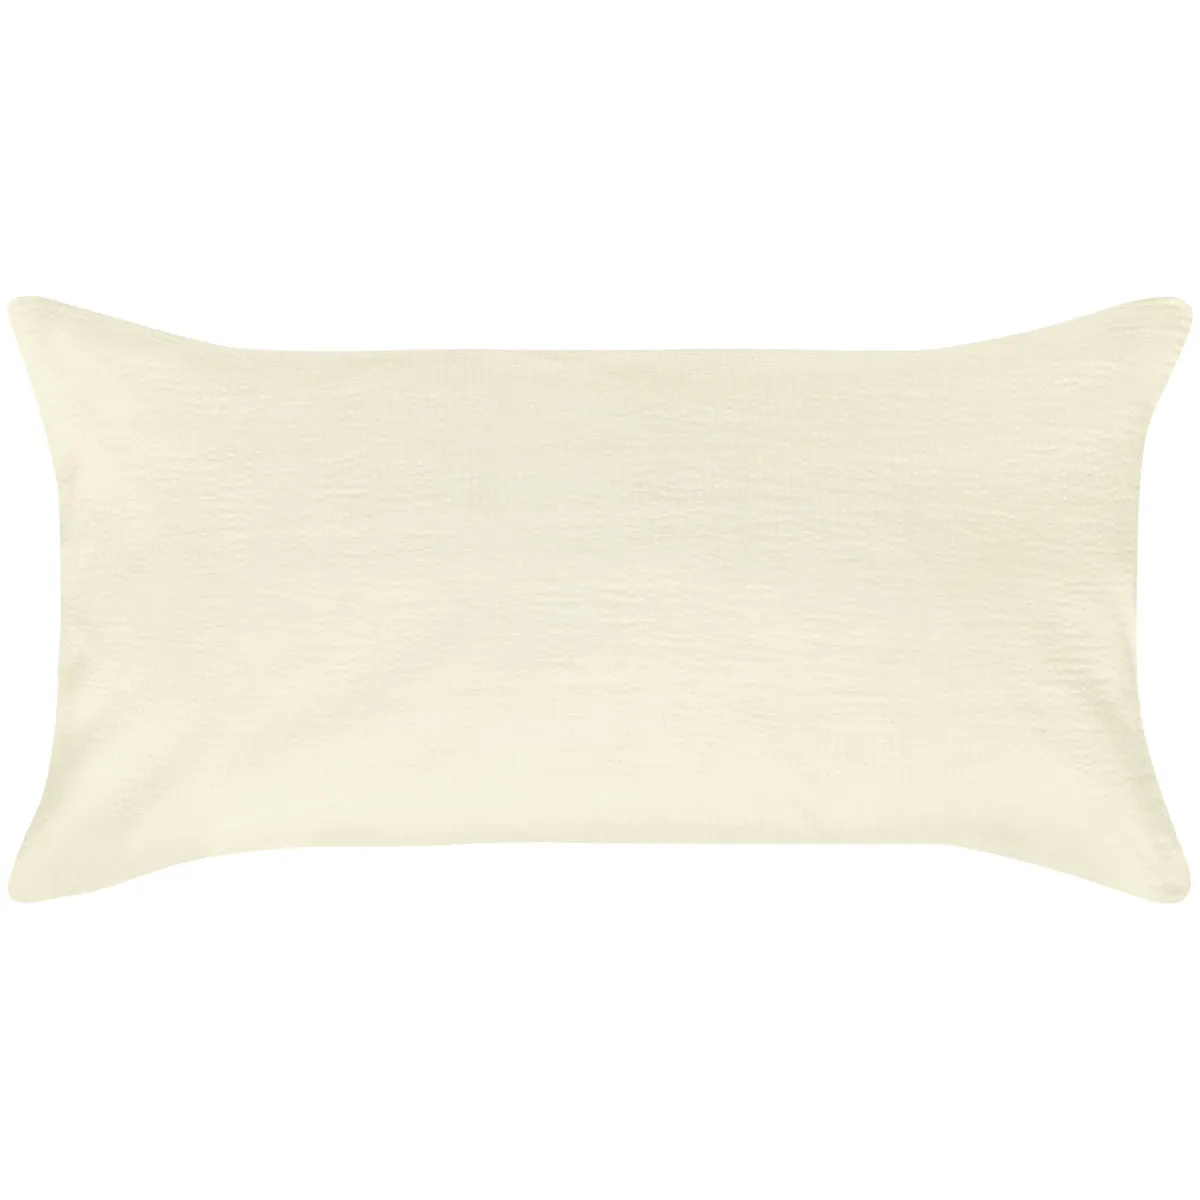 Federa cuscino Antila chiusura a sacco ; 60x90 cm (LxL); champagne beige